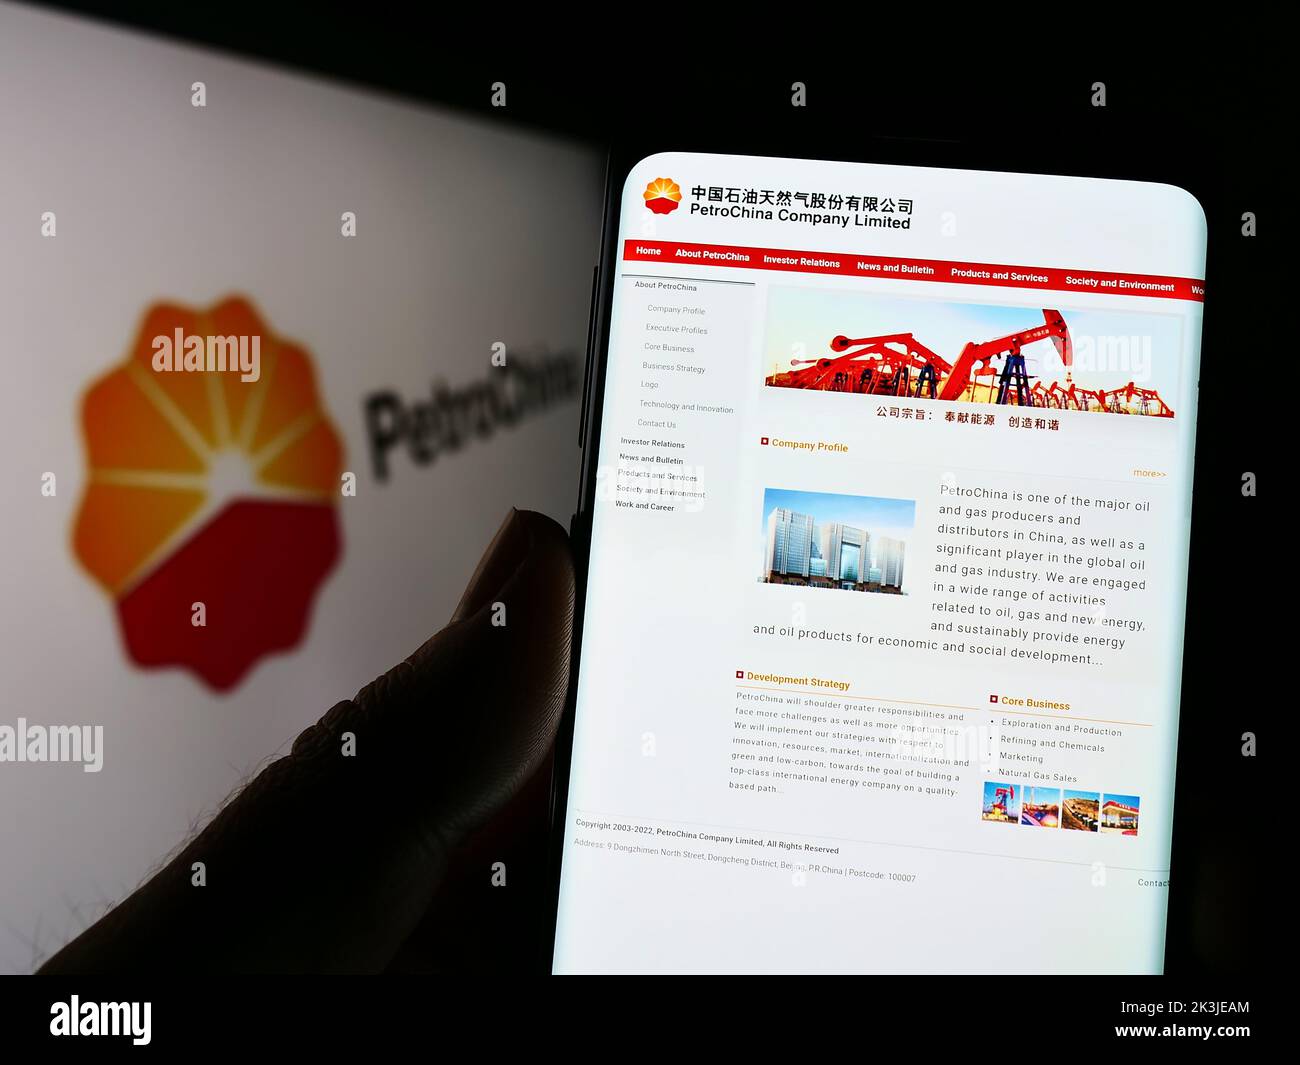 Persona que sostiene el teléfono celular con el Web site del petróleo y del gas chino PetroChina Company Limited en la pantalla con el logotipo. Enfoque en el centro de la pantalla del teléfono. Foto de stock